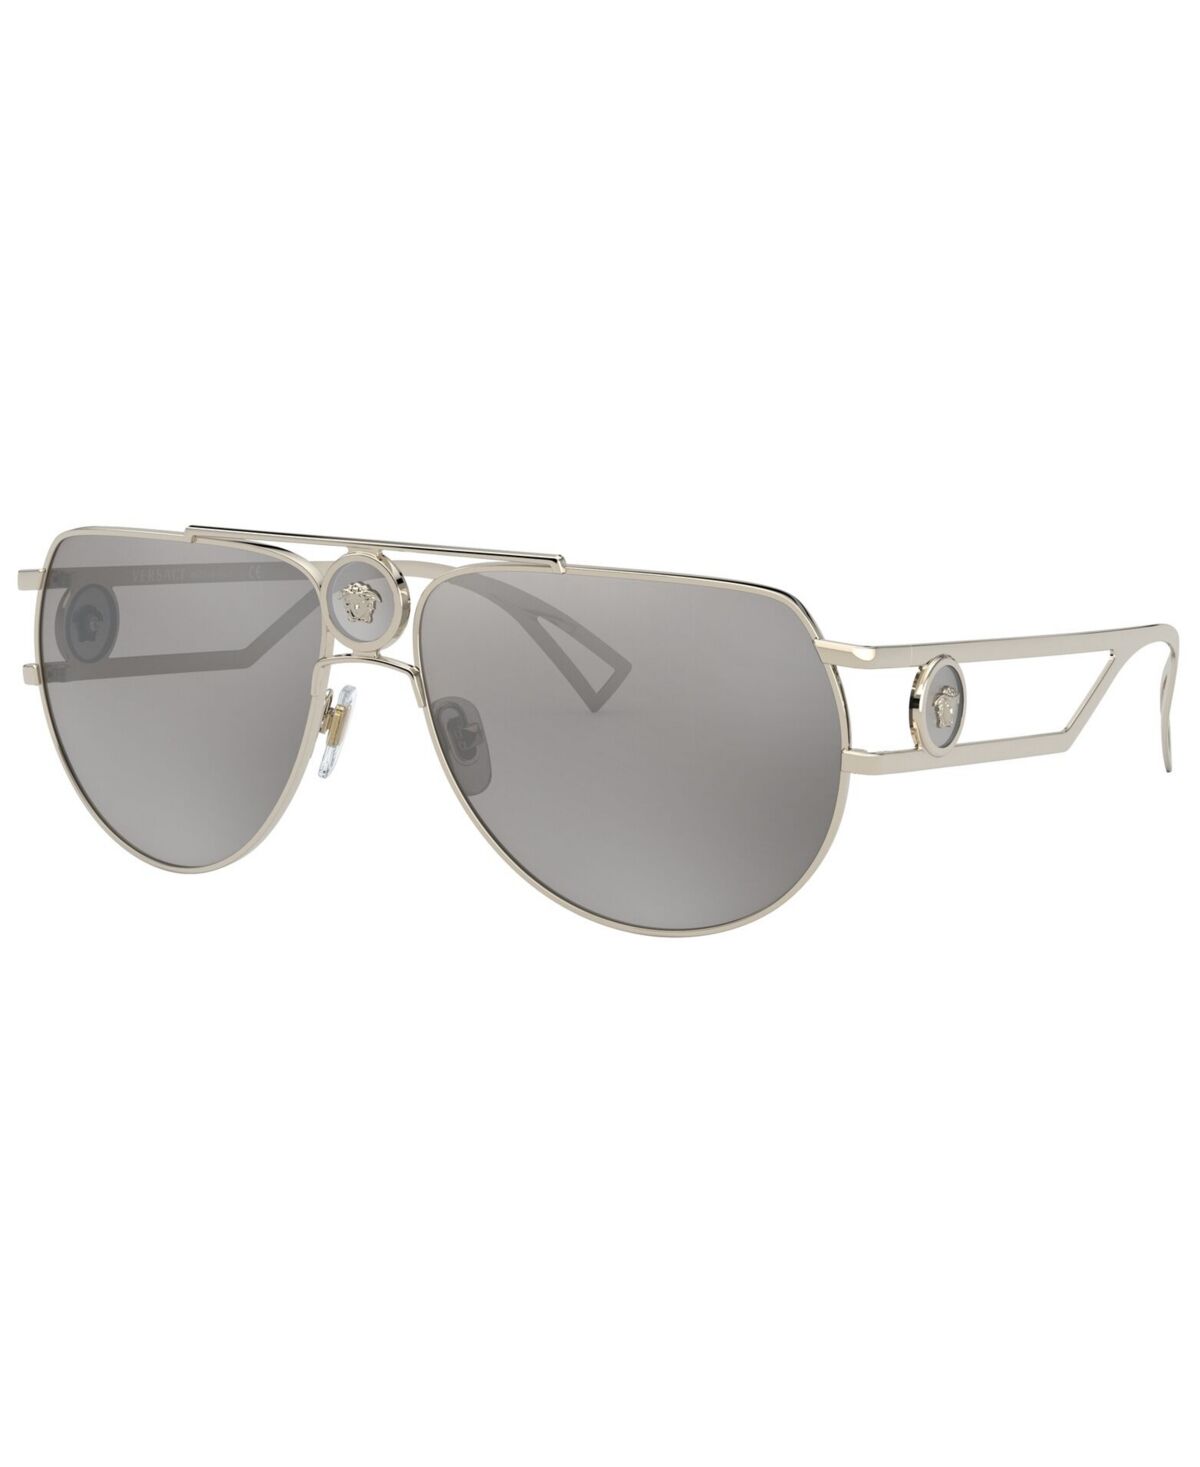 Versace Men's Sunglasses, VE2225 - PALE GOLD